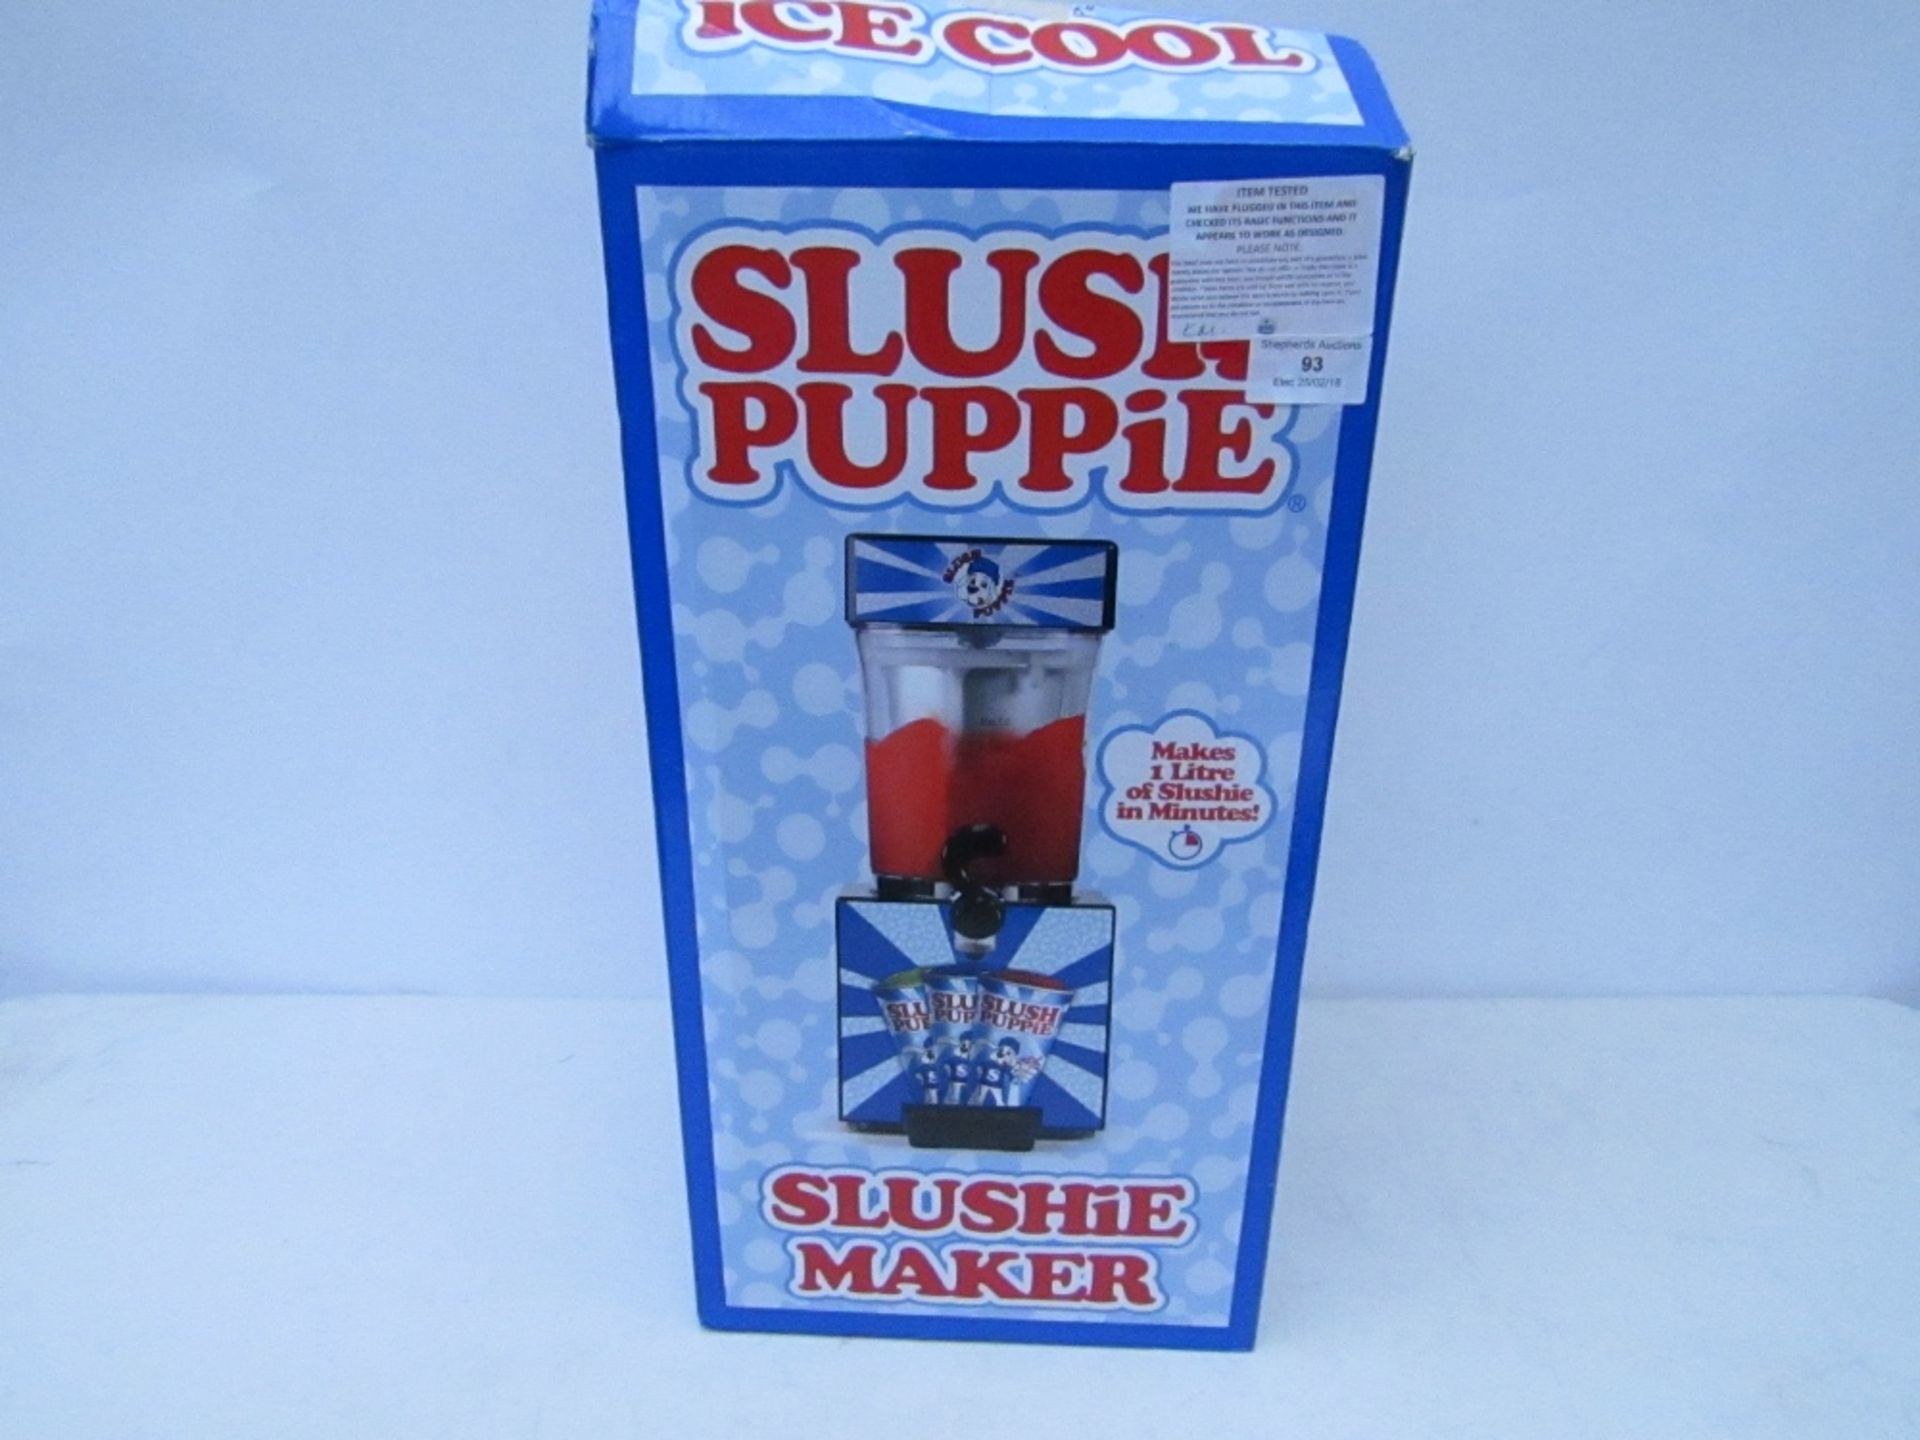 Slush Puppie slushie maker. Tested working & boxed.